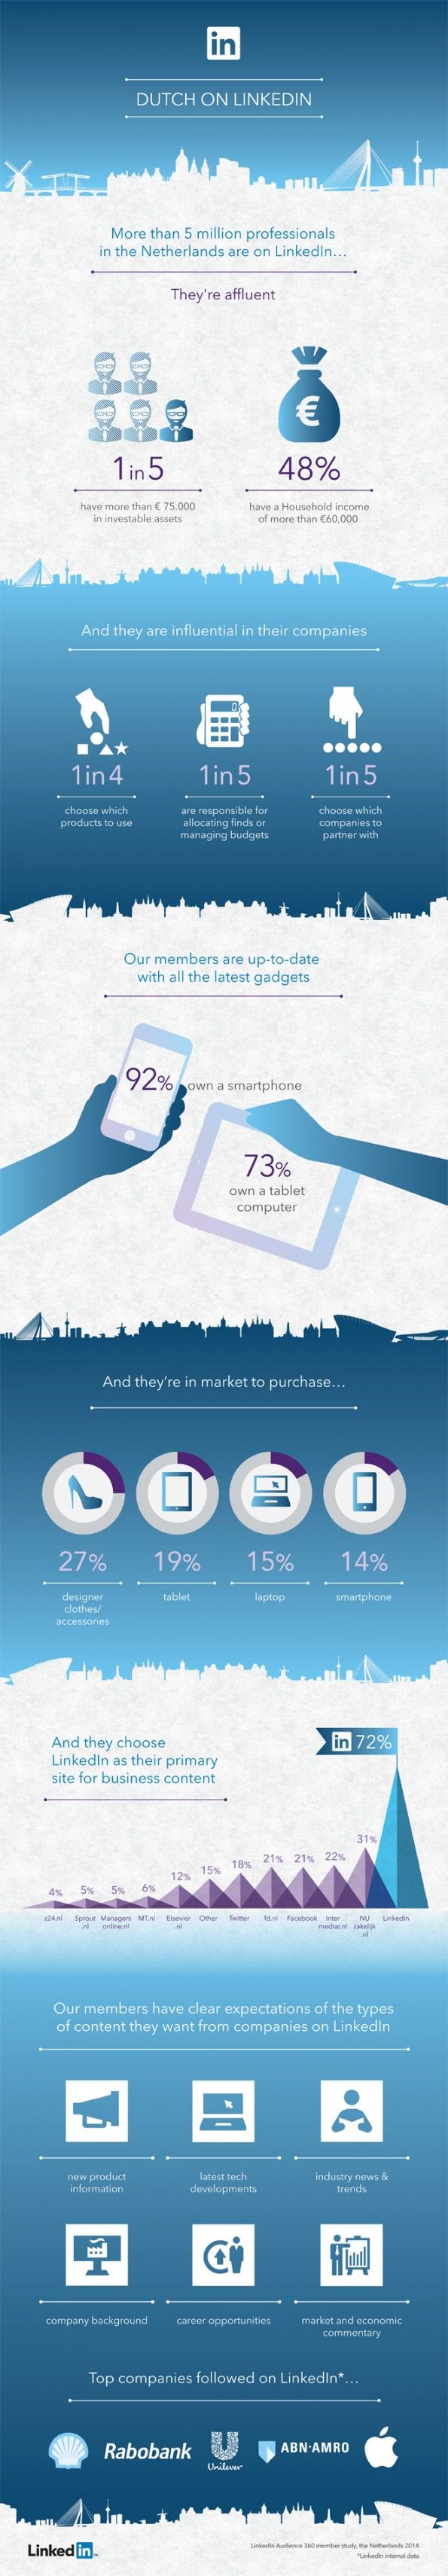 LinkedIn-infographic-nederlandse-gebruikers